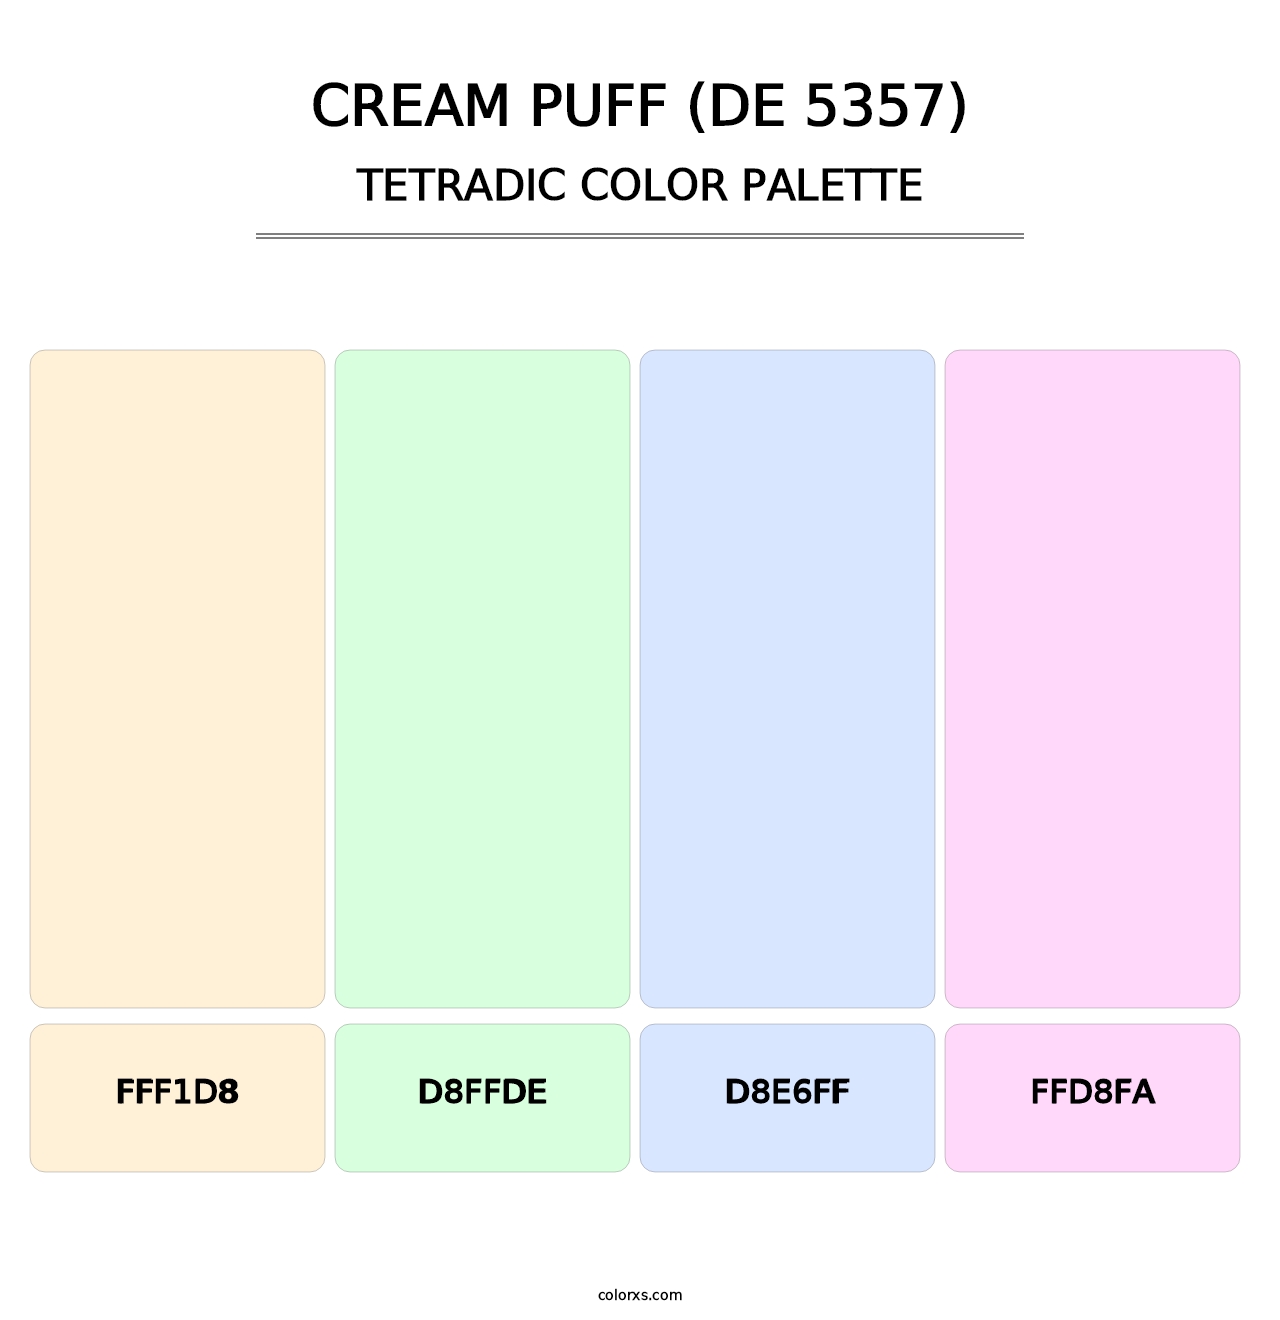 Cream Puff (DE 5357) - Tetradic Color Palette